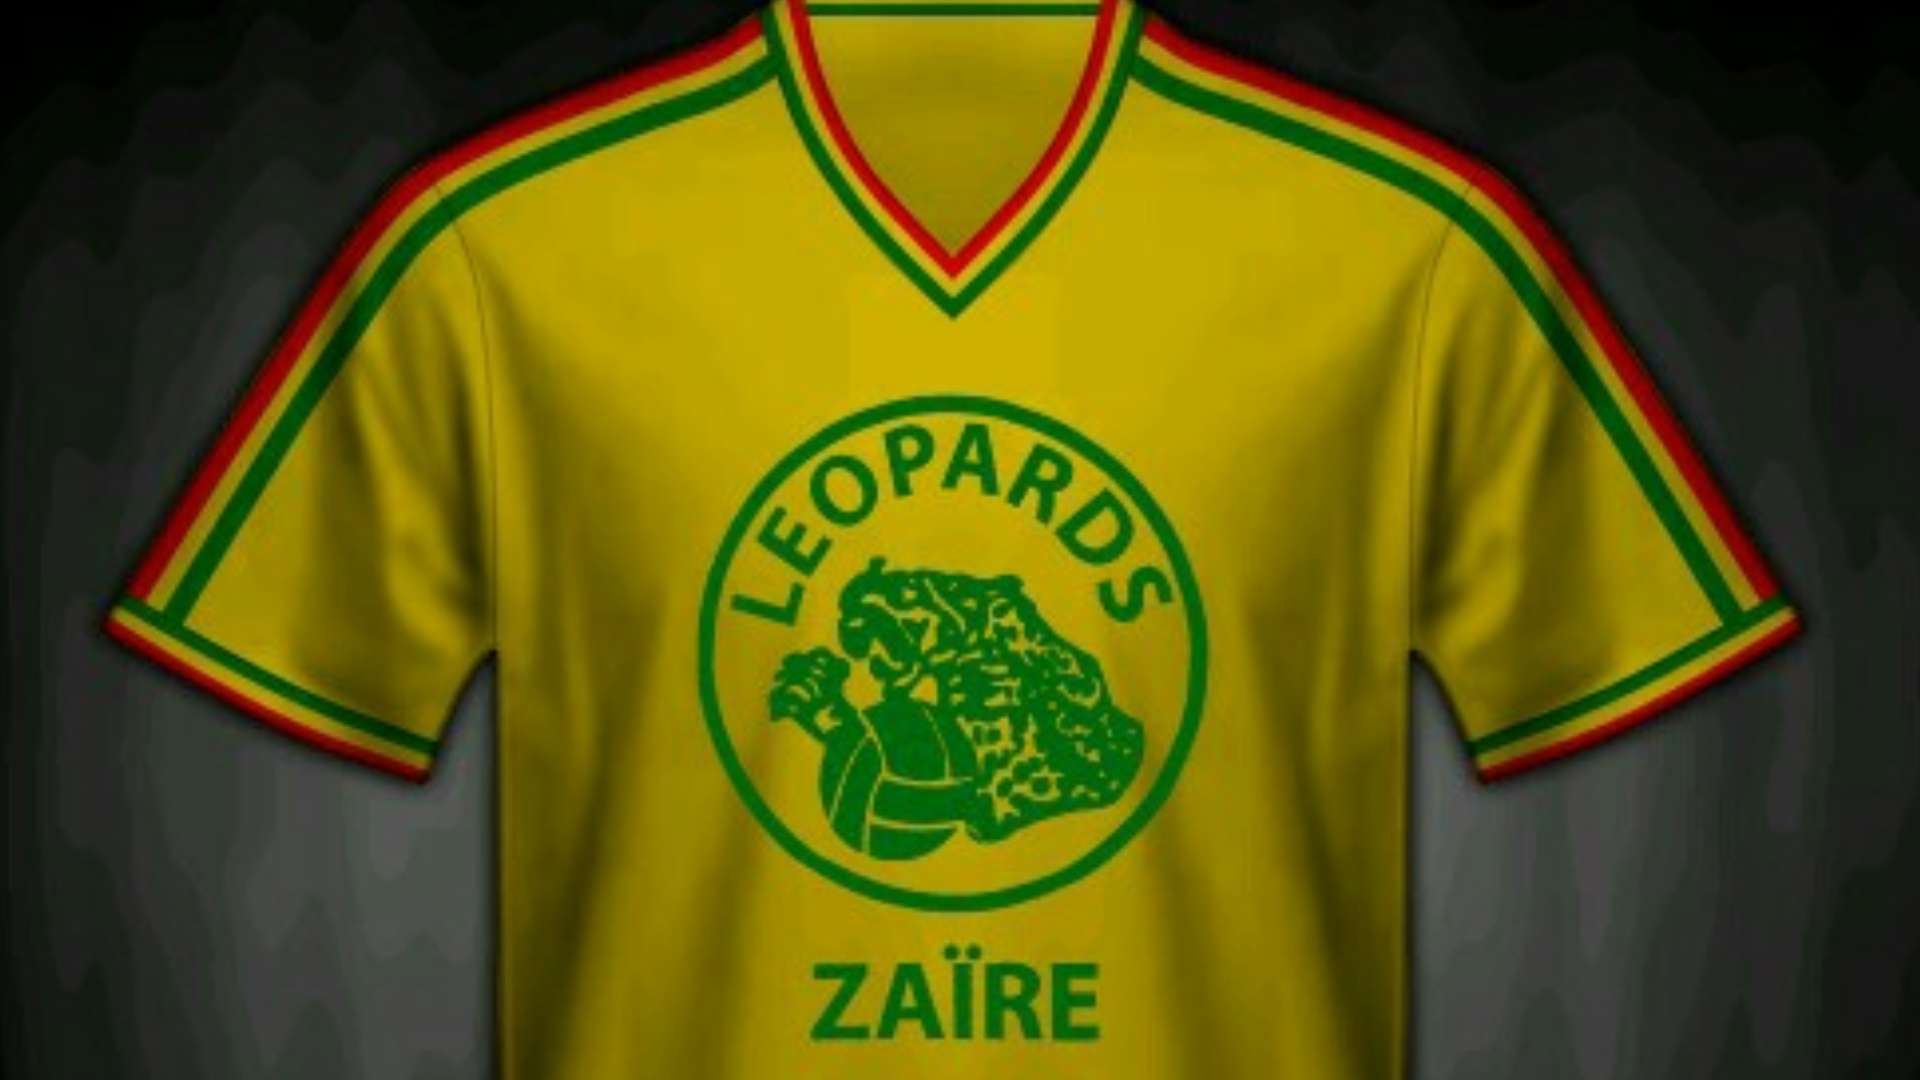 Zaire Copa do Mundo 1974 08 11 2017